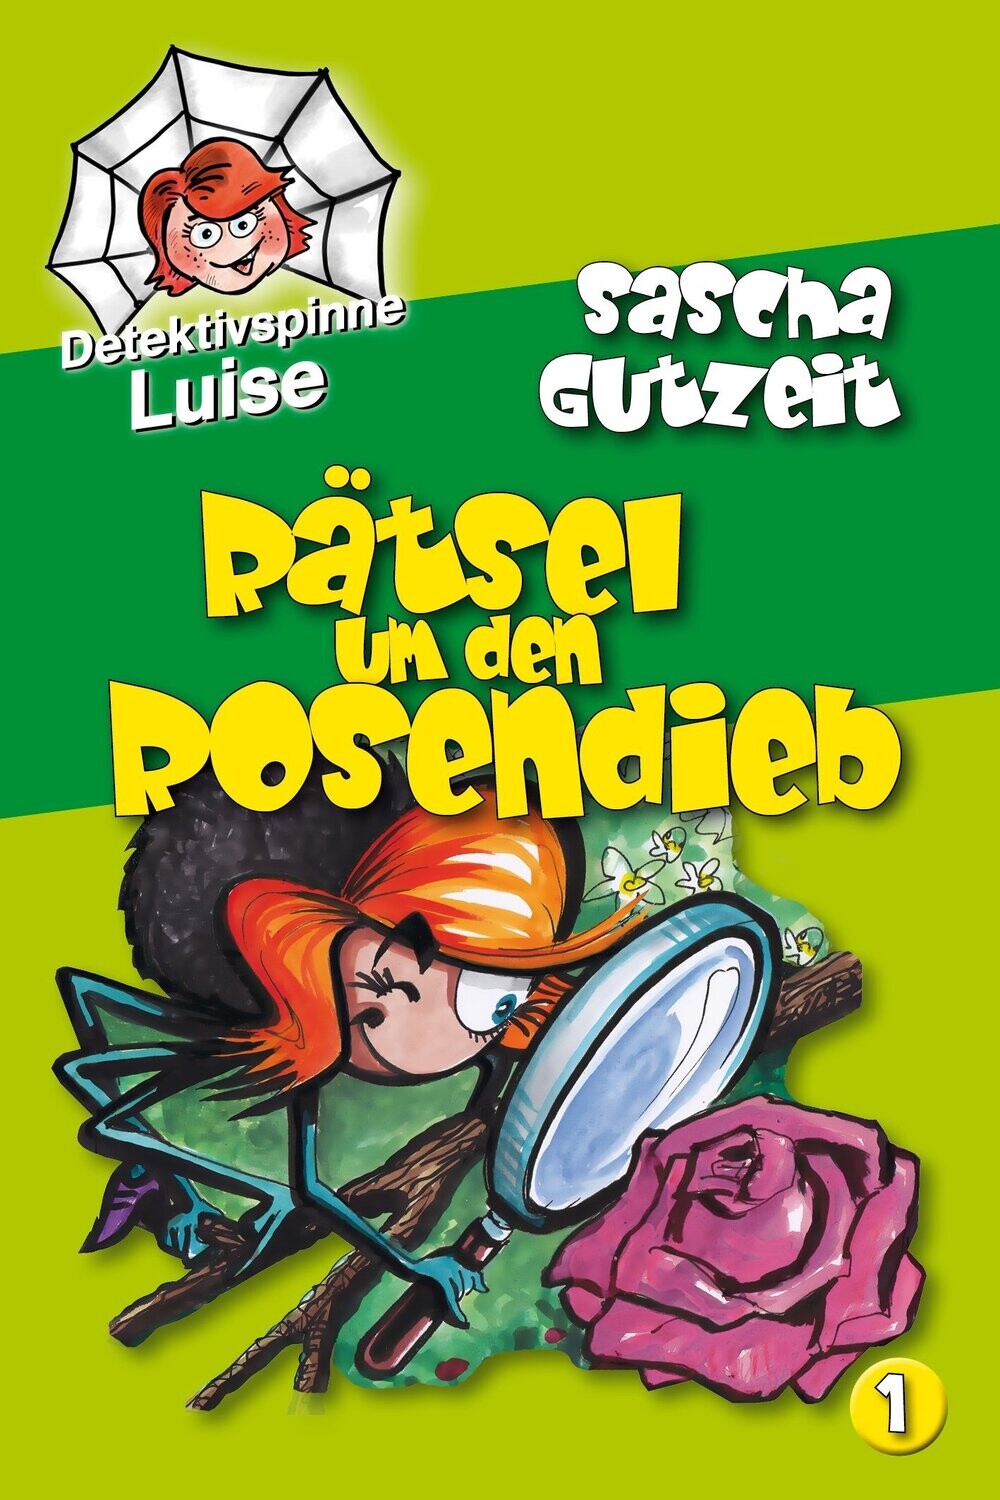 »Detektivspinne Luise - Band 1: Rätsel um den Rosendieb« von Sascha Gutzeit